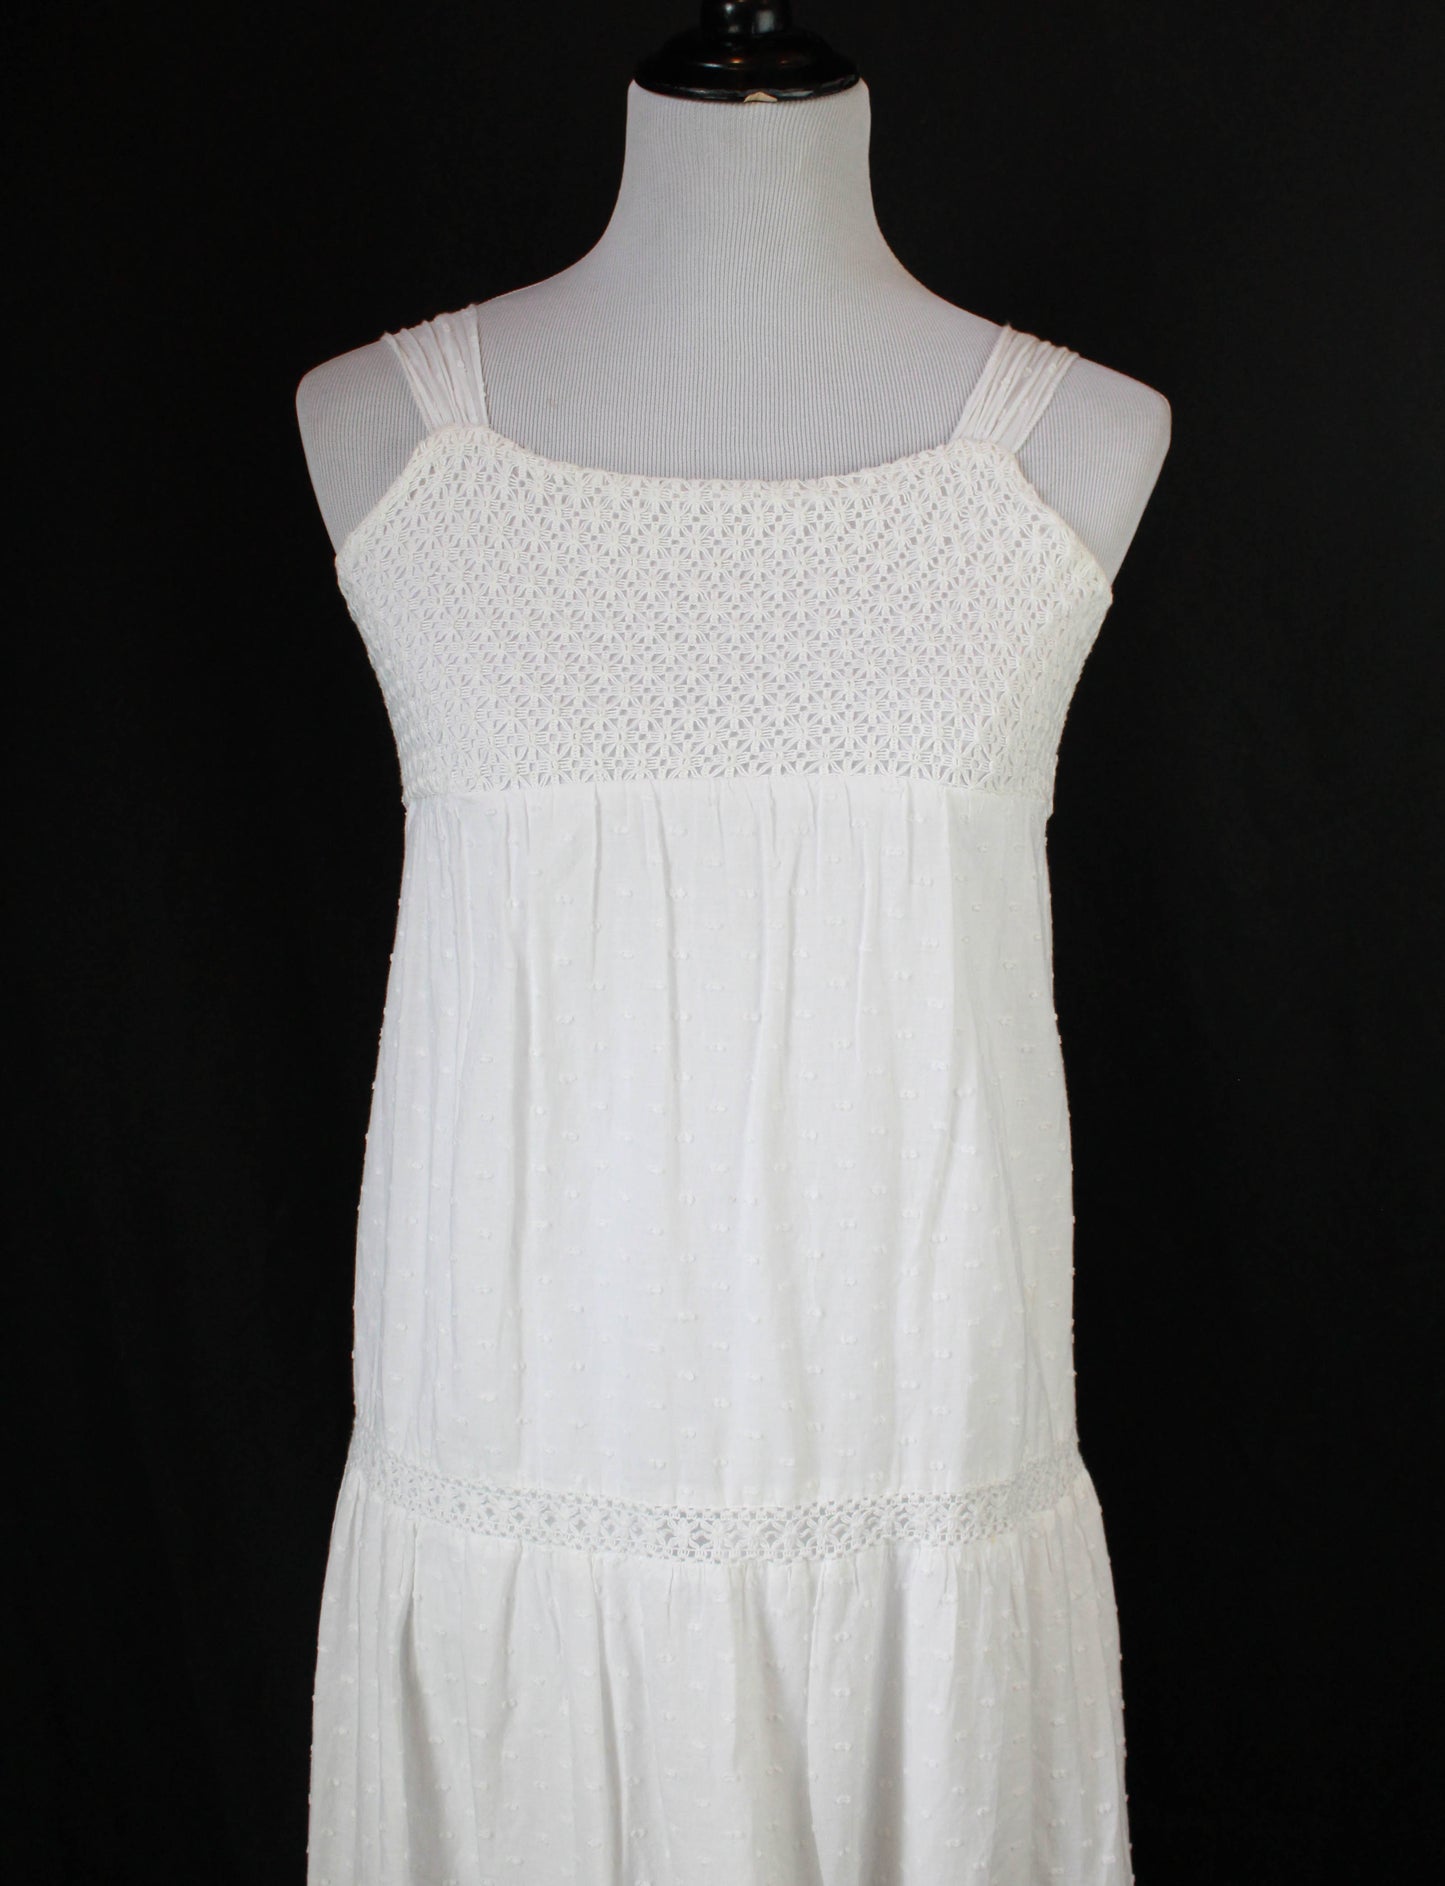 Women's Vintage White Swiss Dot Babydoll Dress - XS